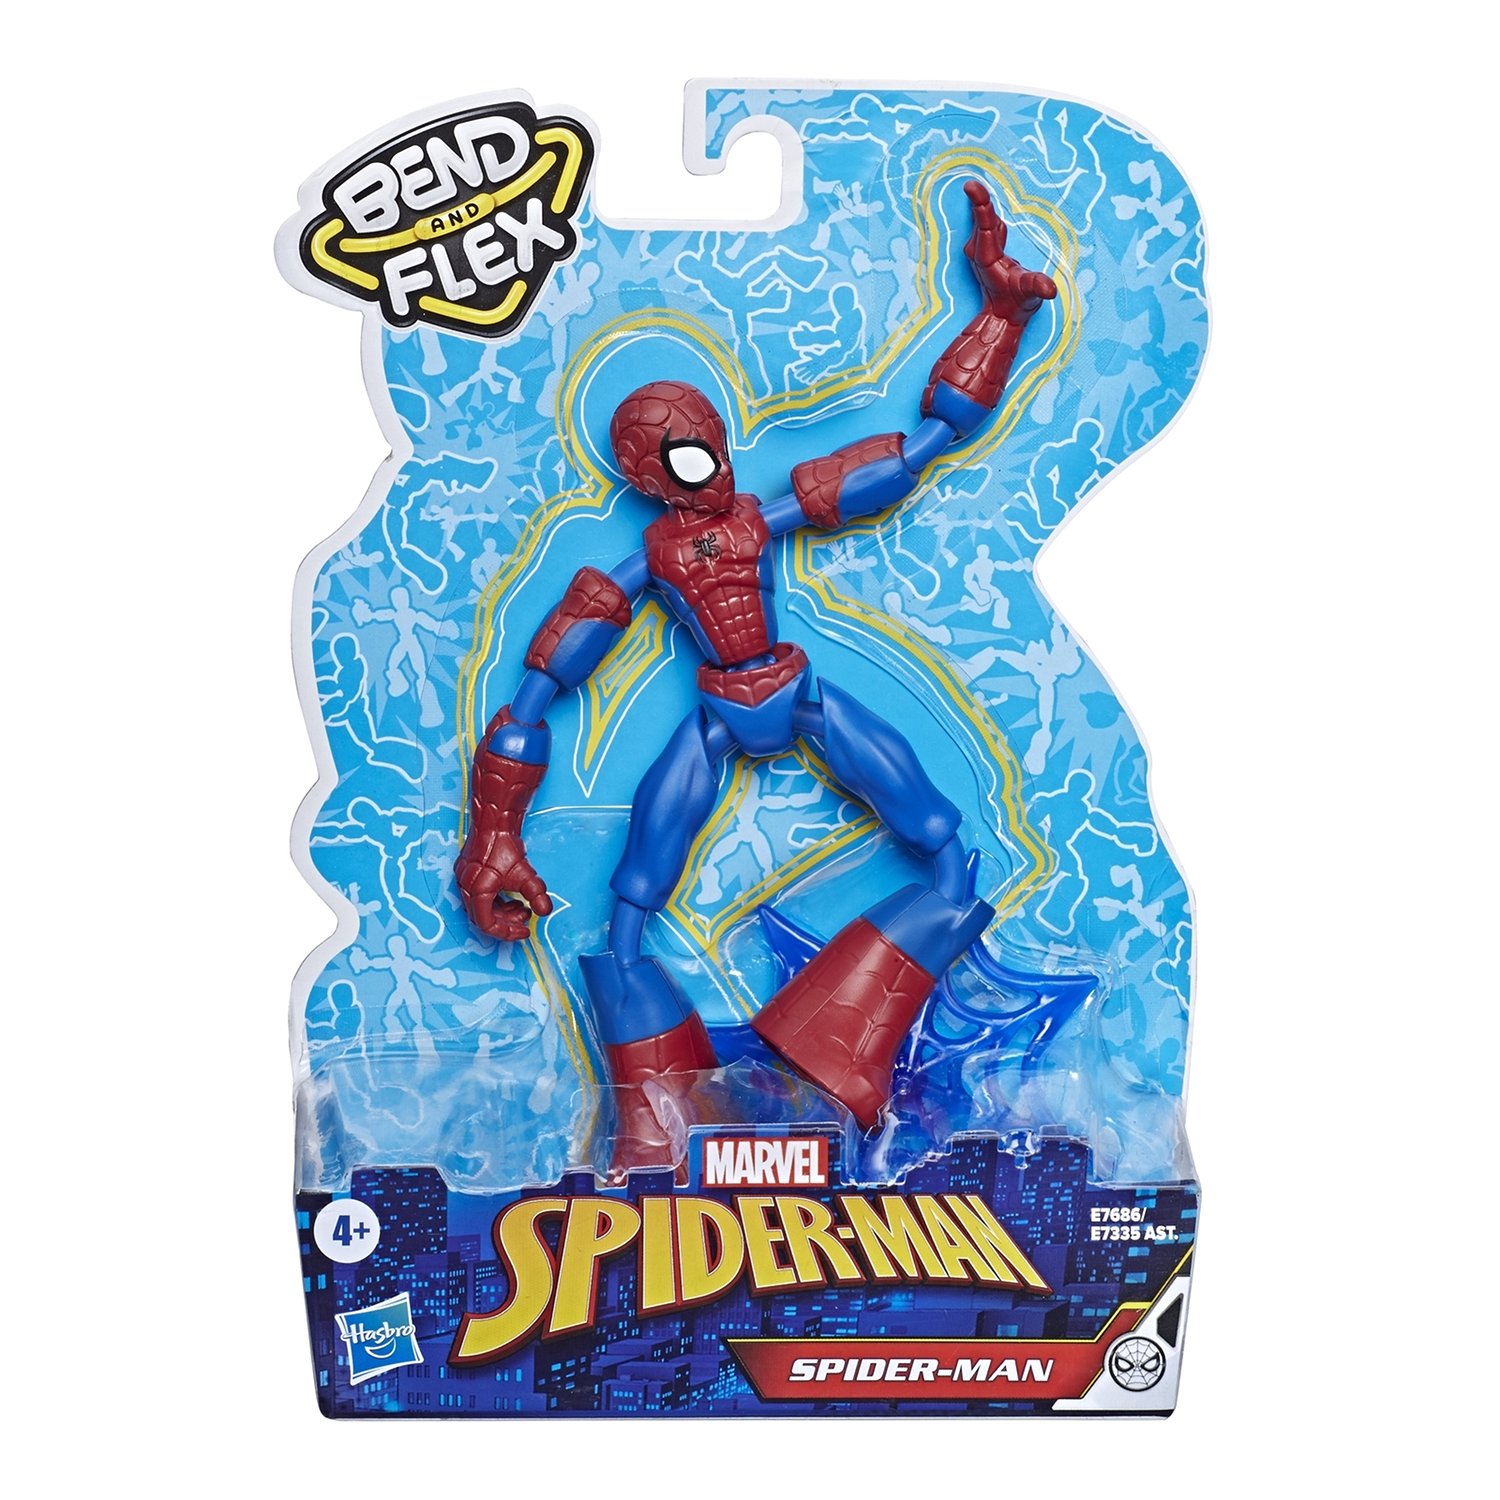 SALE* Hasbro. Spider-Man 76865X0 Игрушка фигурка Человек-Паук 15см Бенди 